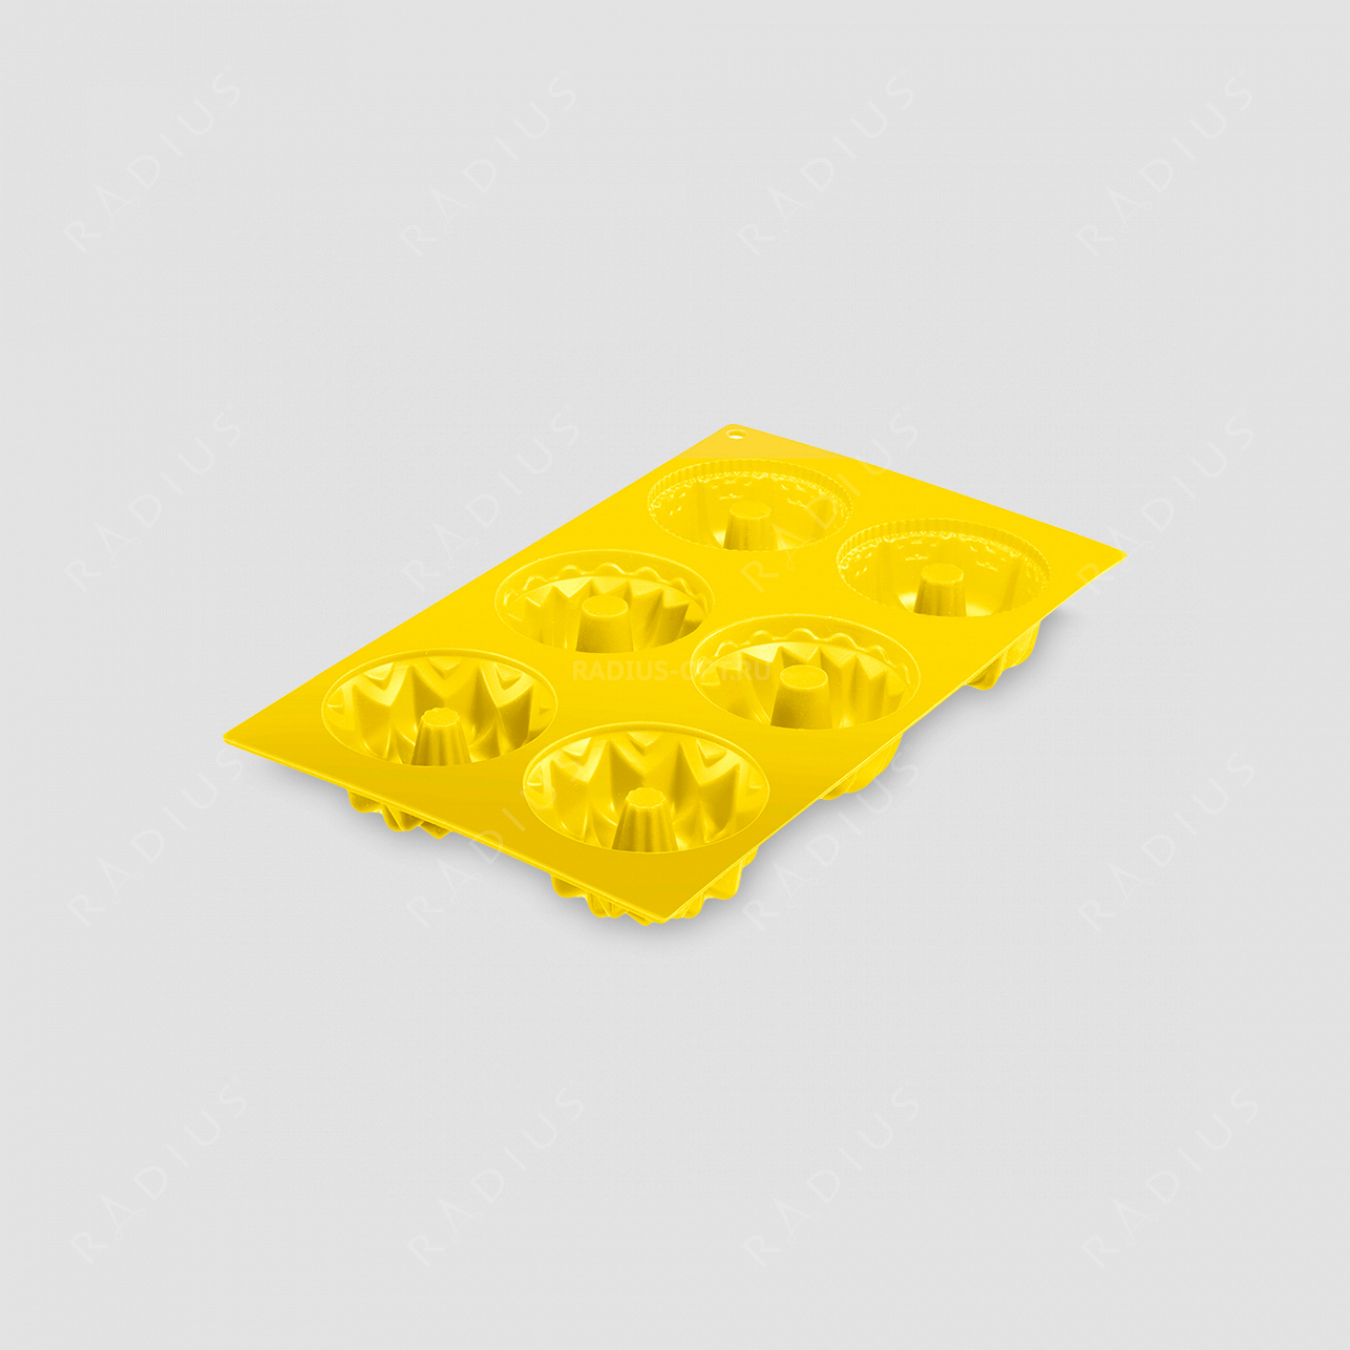 Форма для 6-ти маффинов, силикон, цвет-желтый, серия Silicone, Westmark, Германия